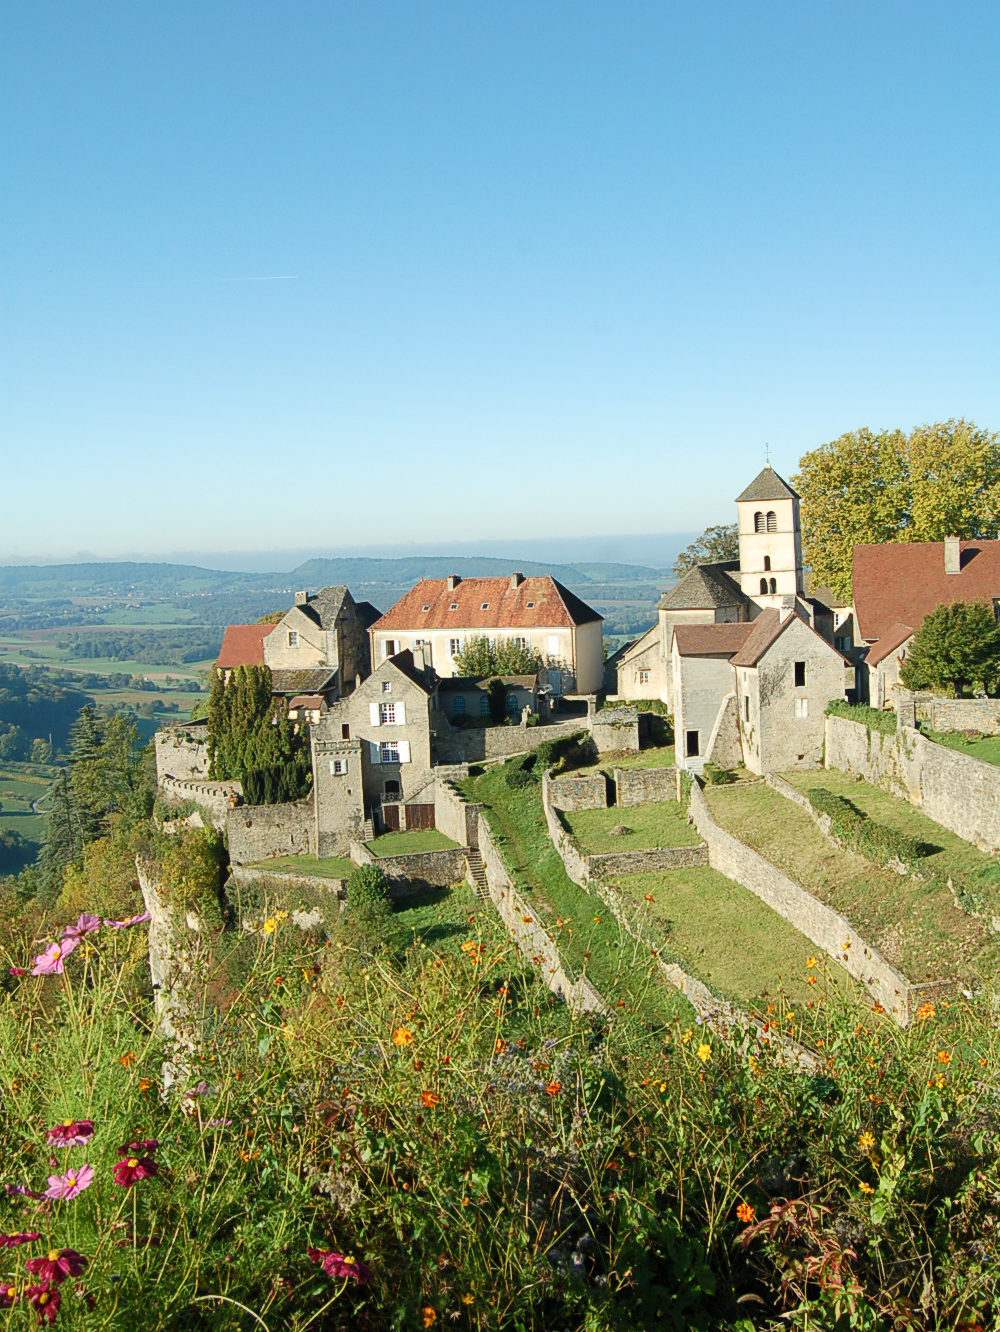 Château-Chalon, Jura